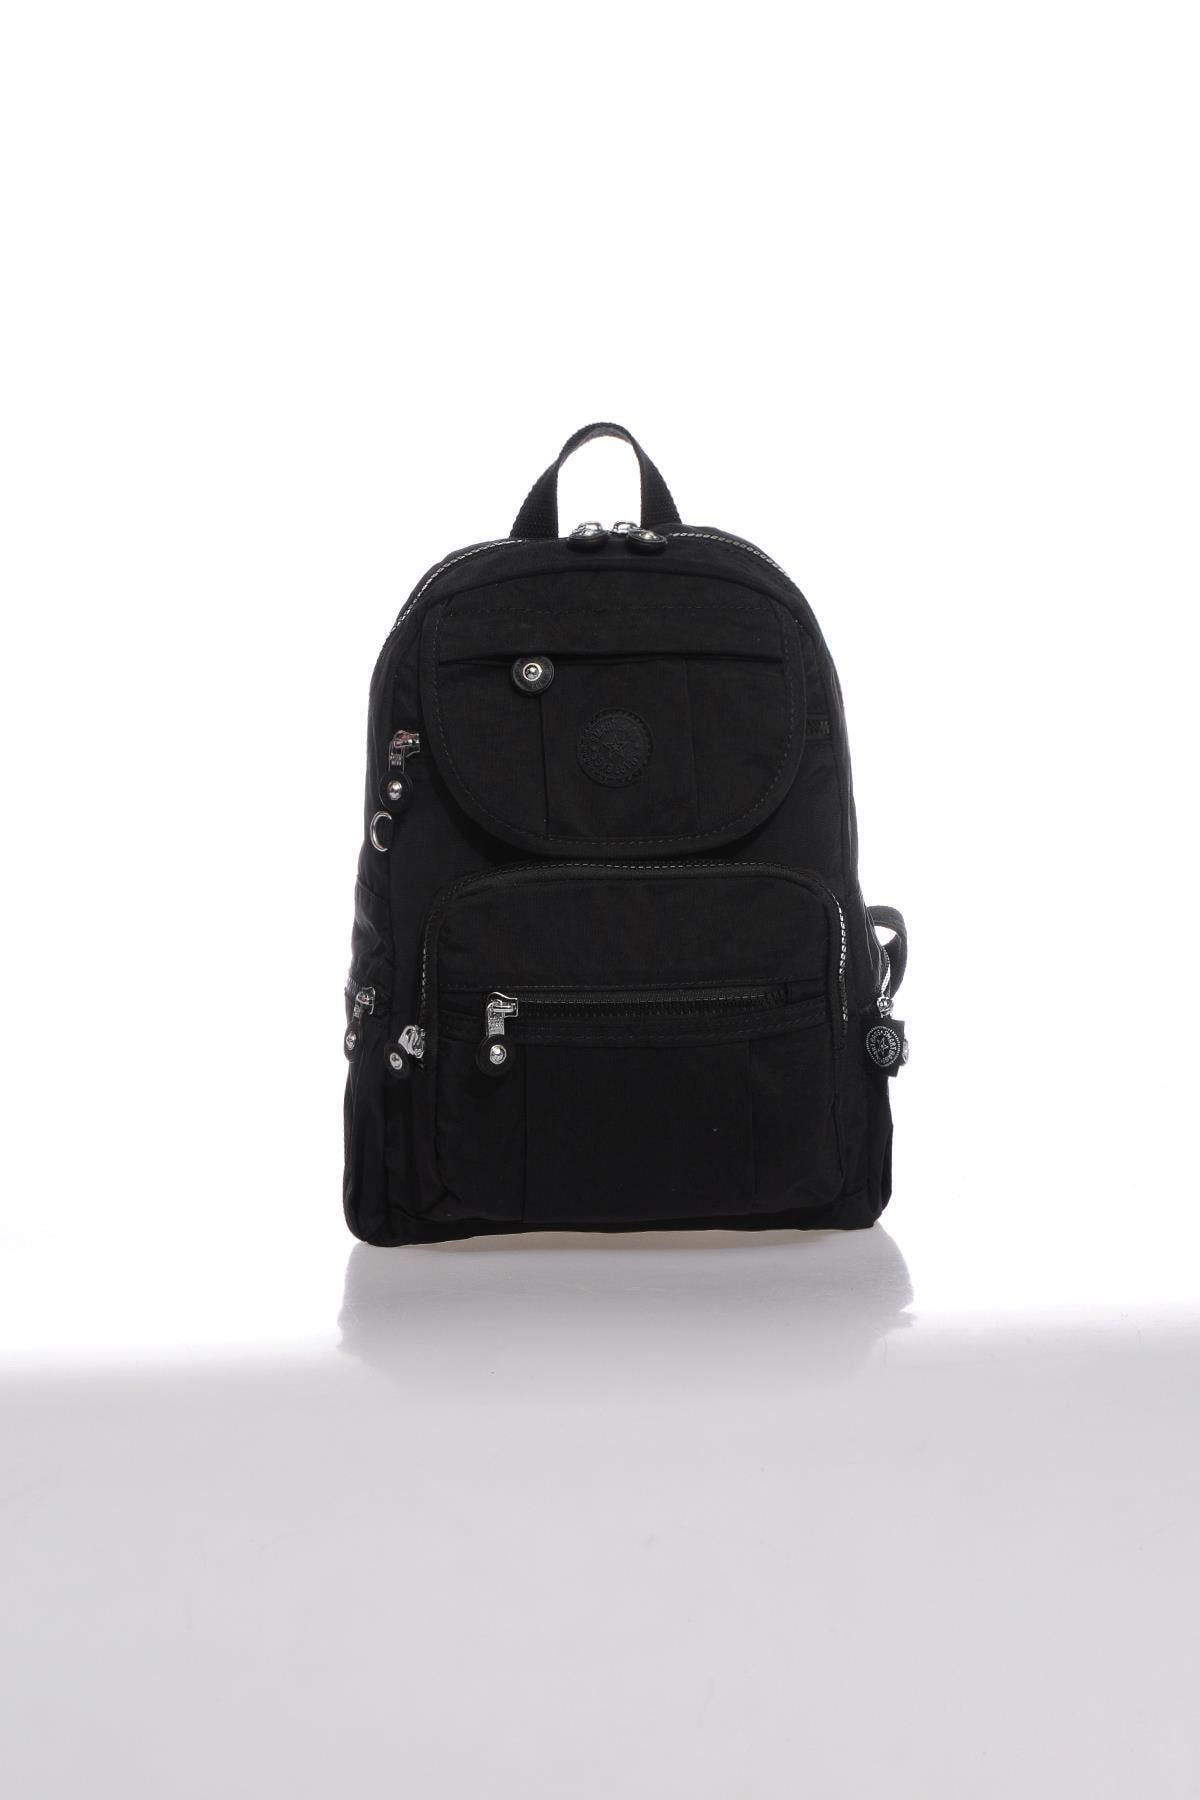 Smart Bags Kadın Siyah Sırt Çantası Smbk3085-0001